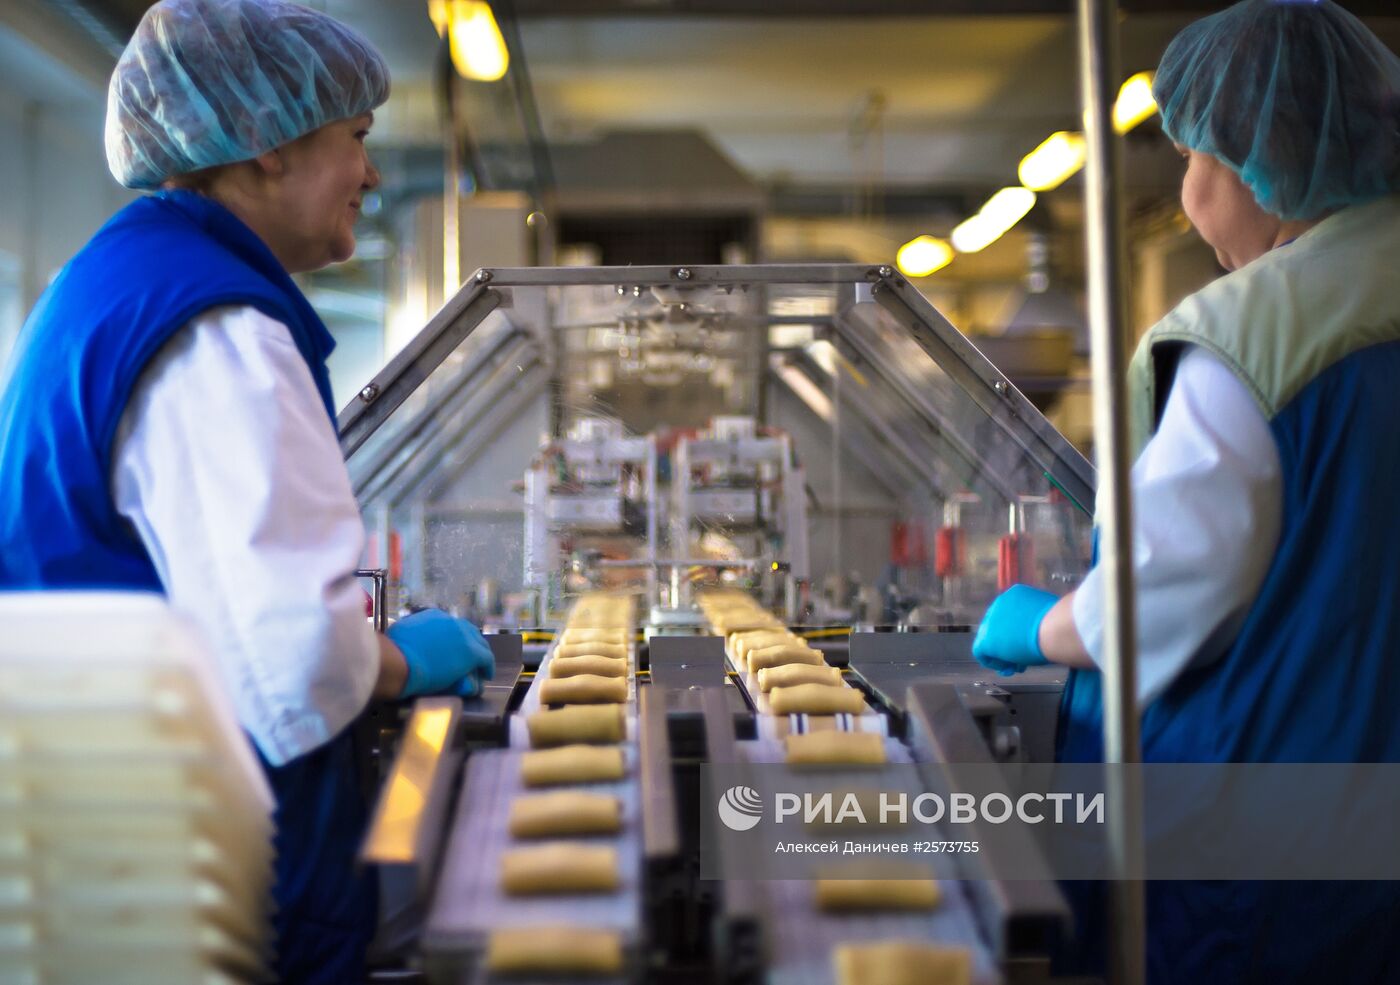 Производство компании "Равиоли" в Санкт-Петербурге